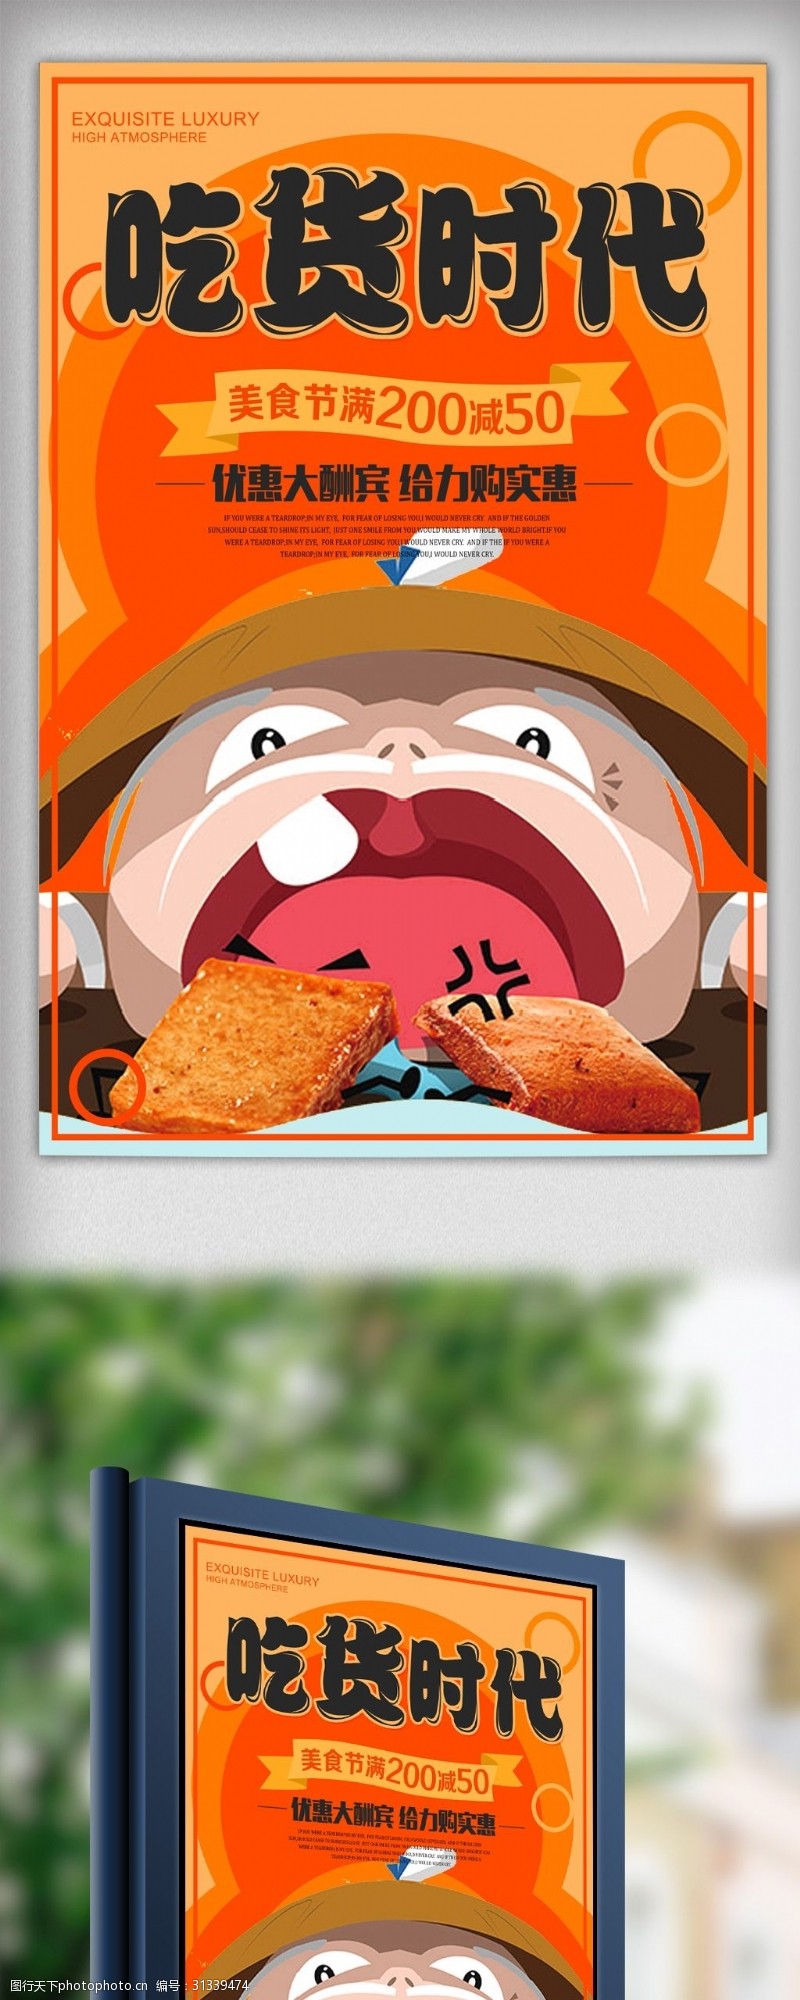 橘色美食吃货节创意卡通海报